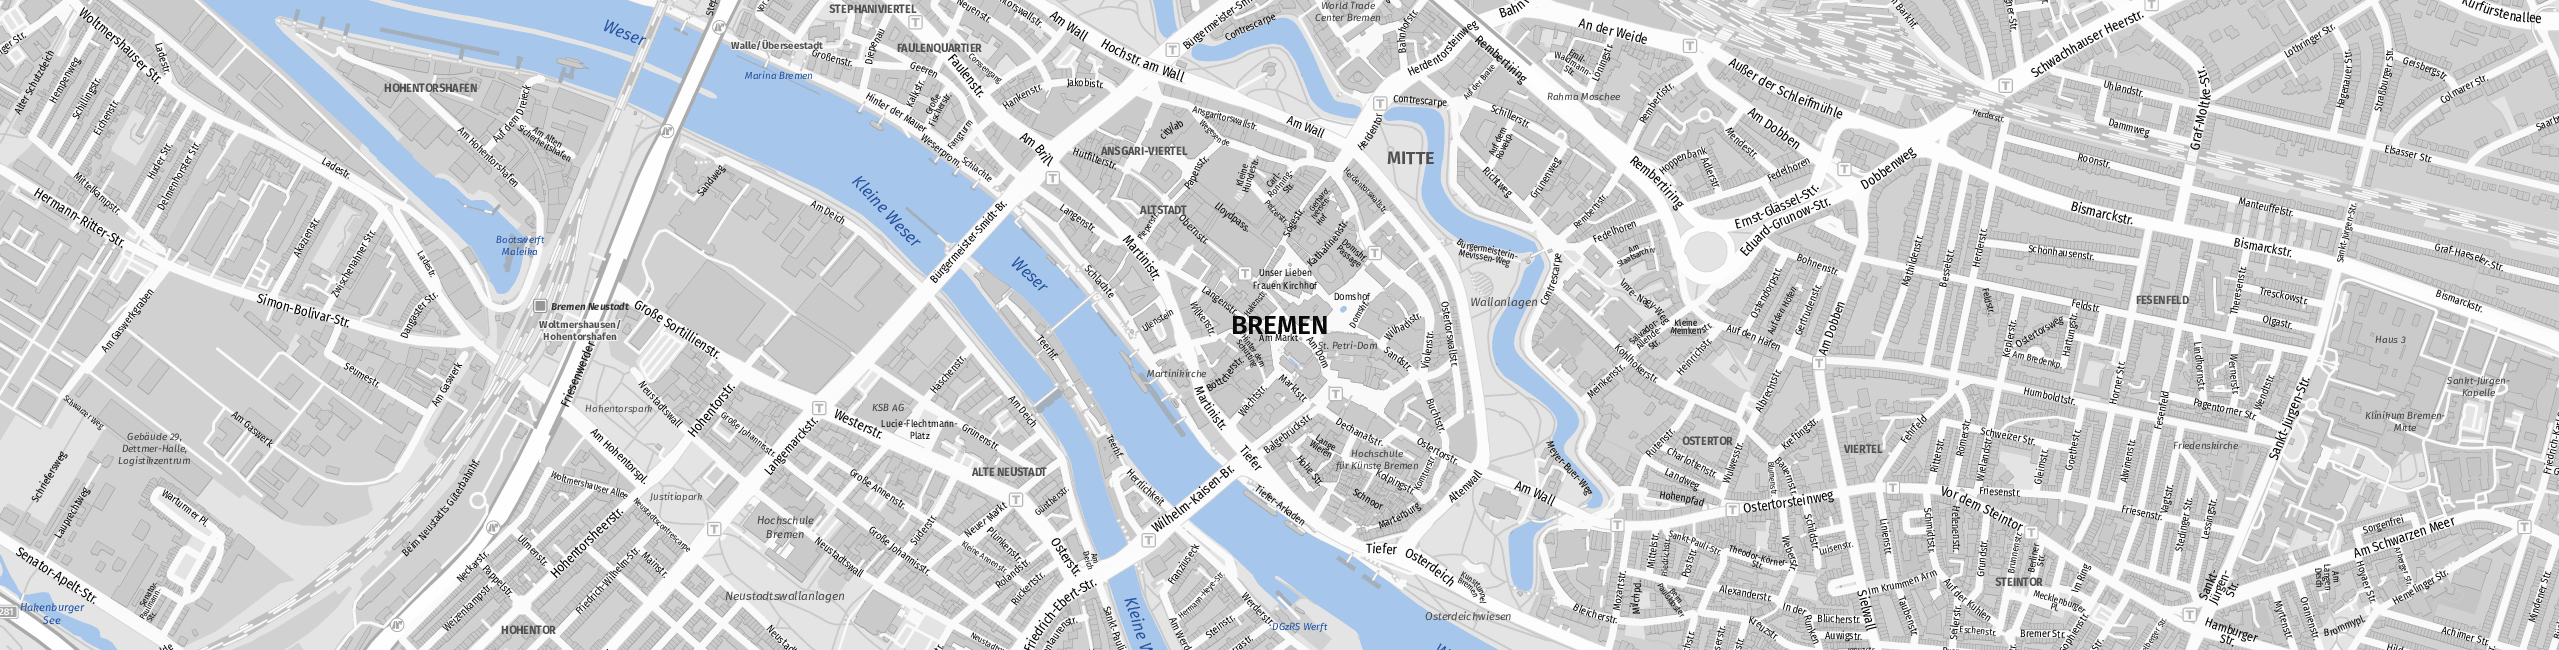 Stadtplan Bremen zum Downloaden.